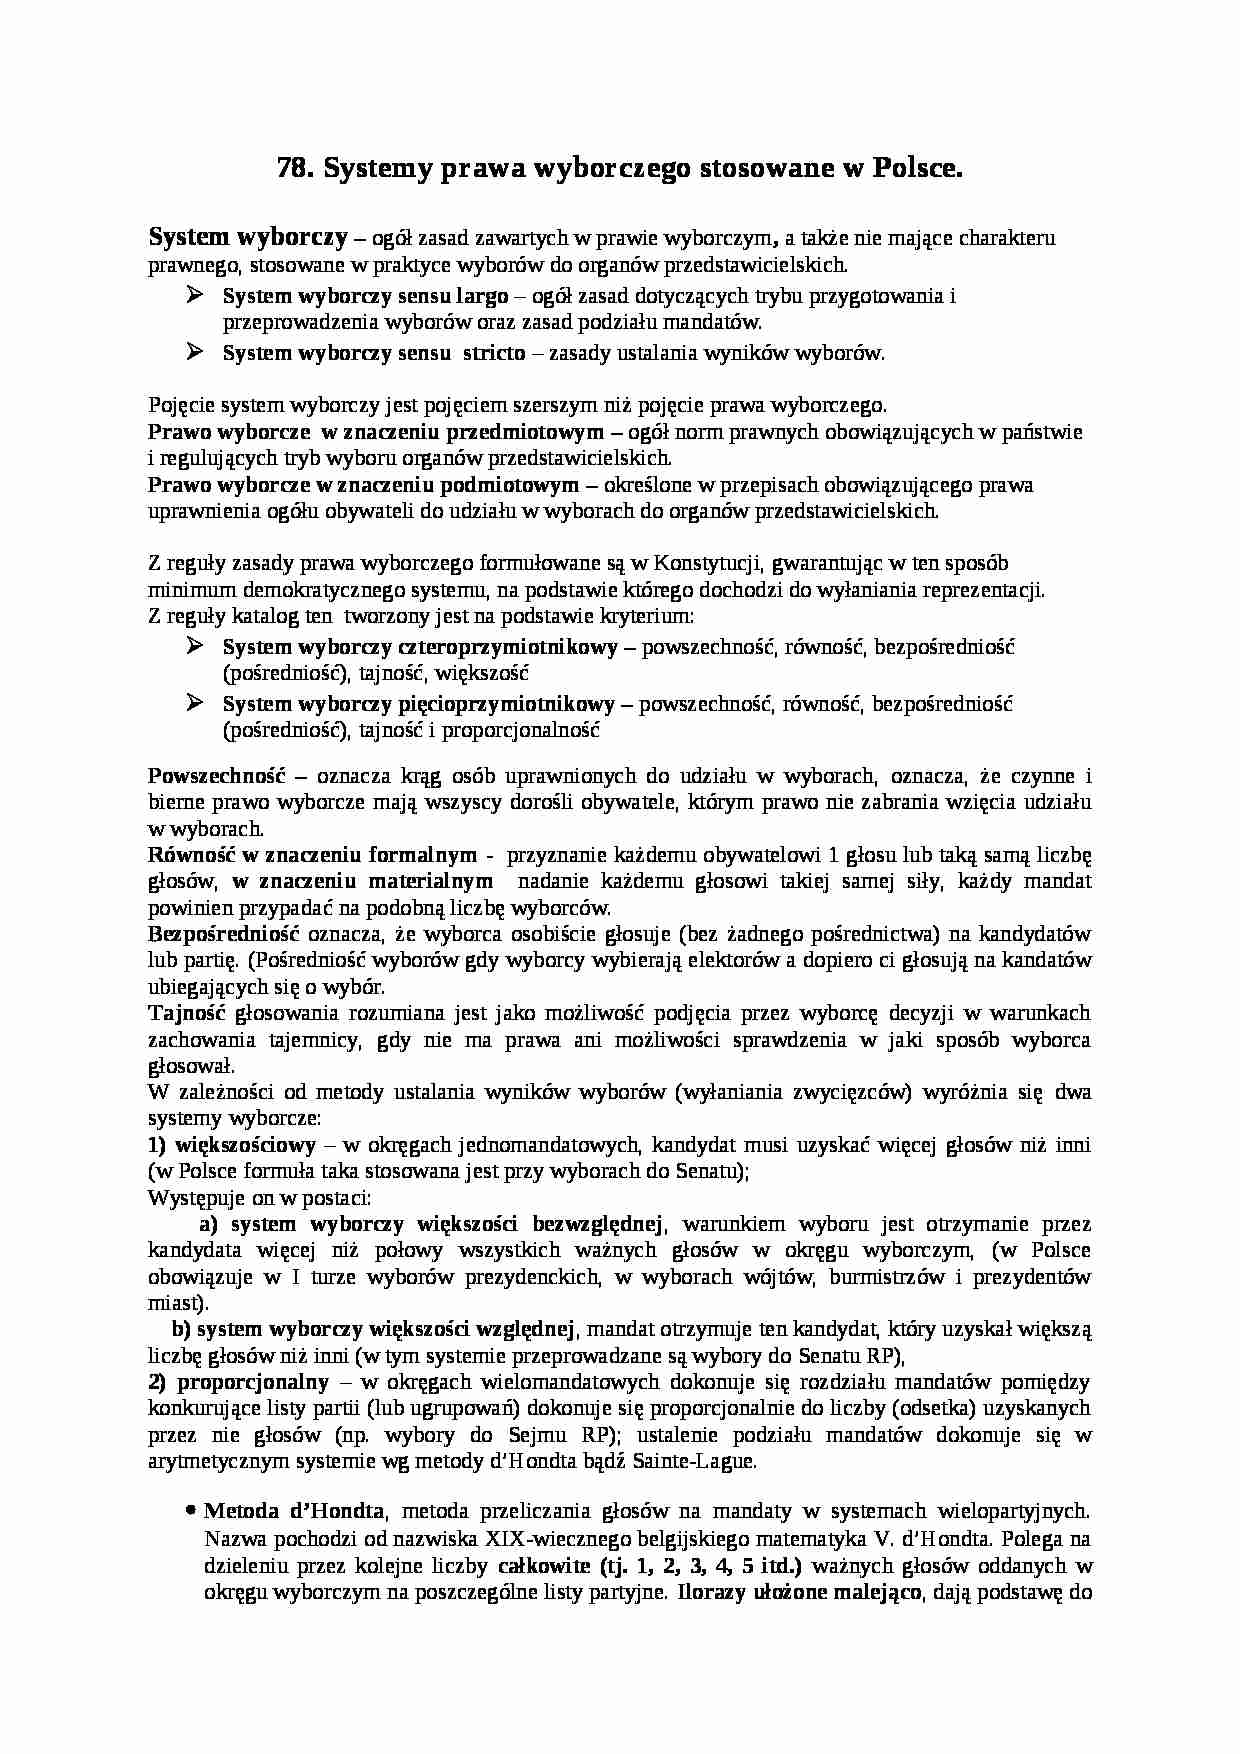 Systemy prawa wyborczego stosowane w Polsce - strona 1